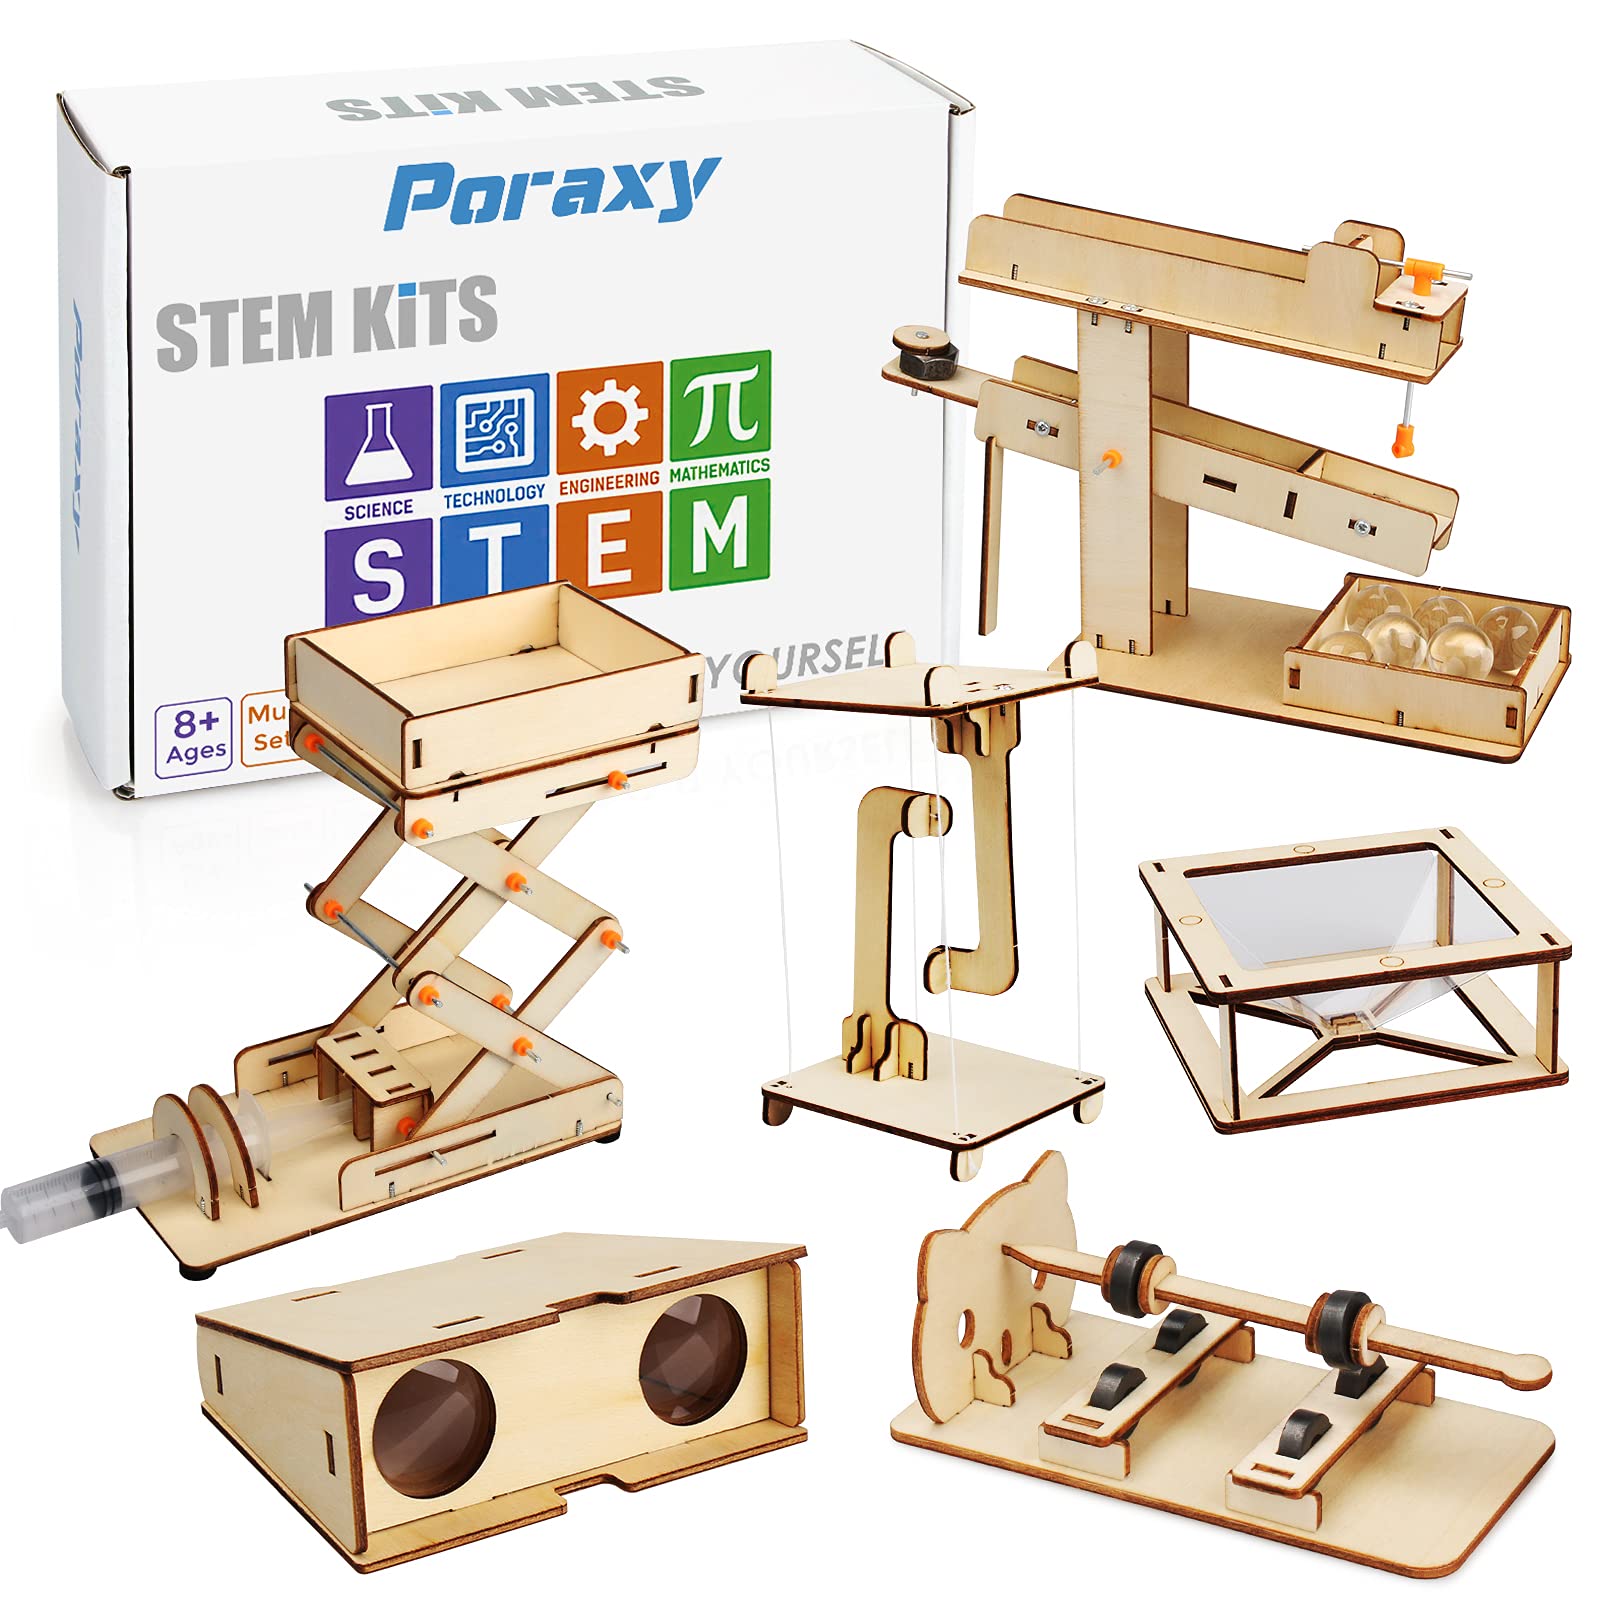 Poraxy STEM Kits